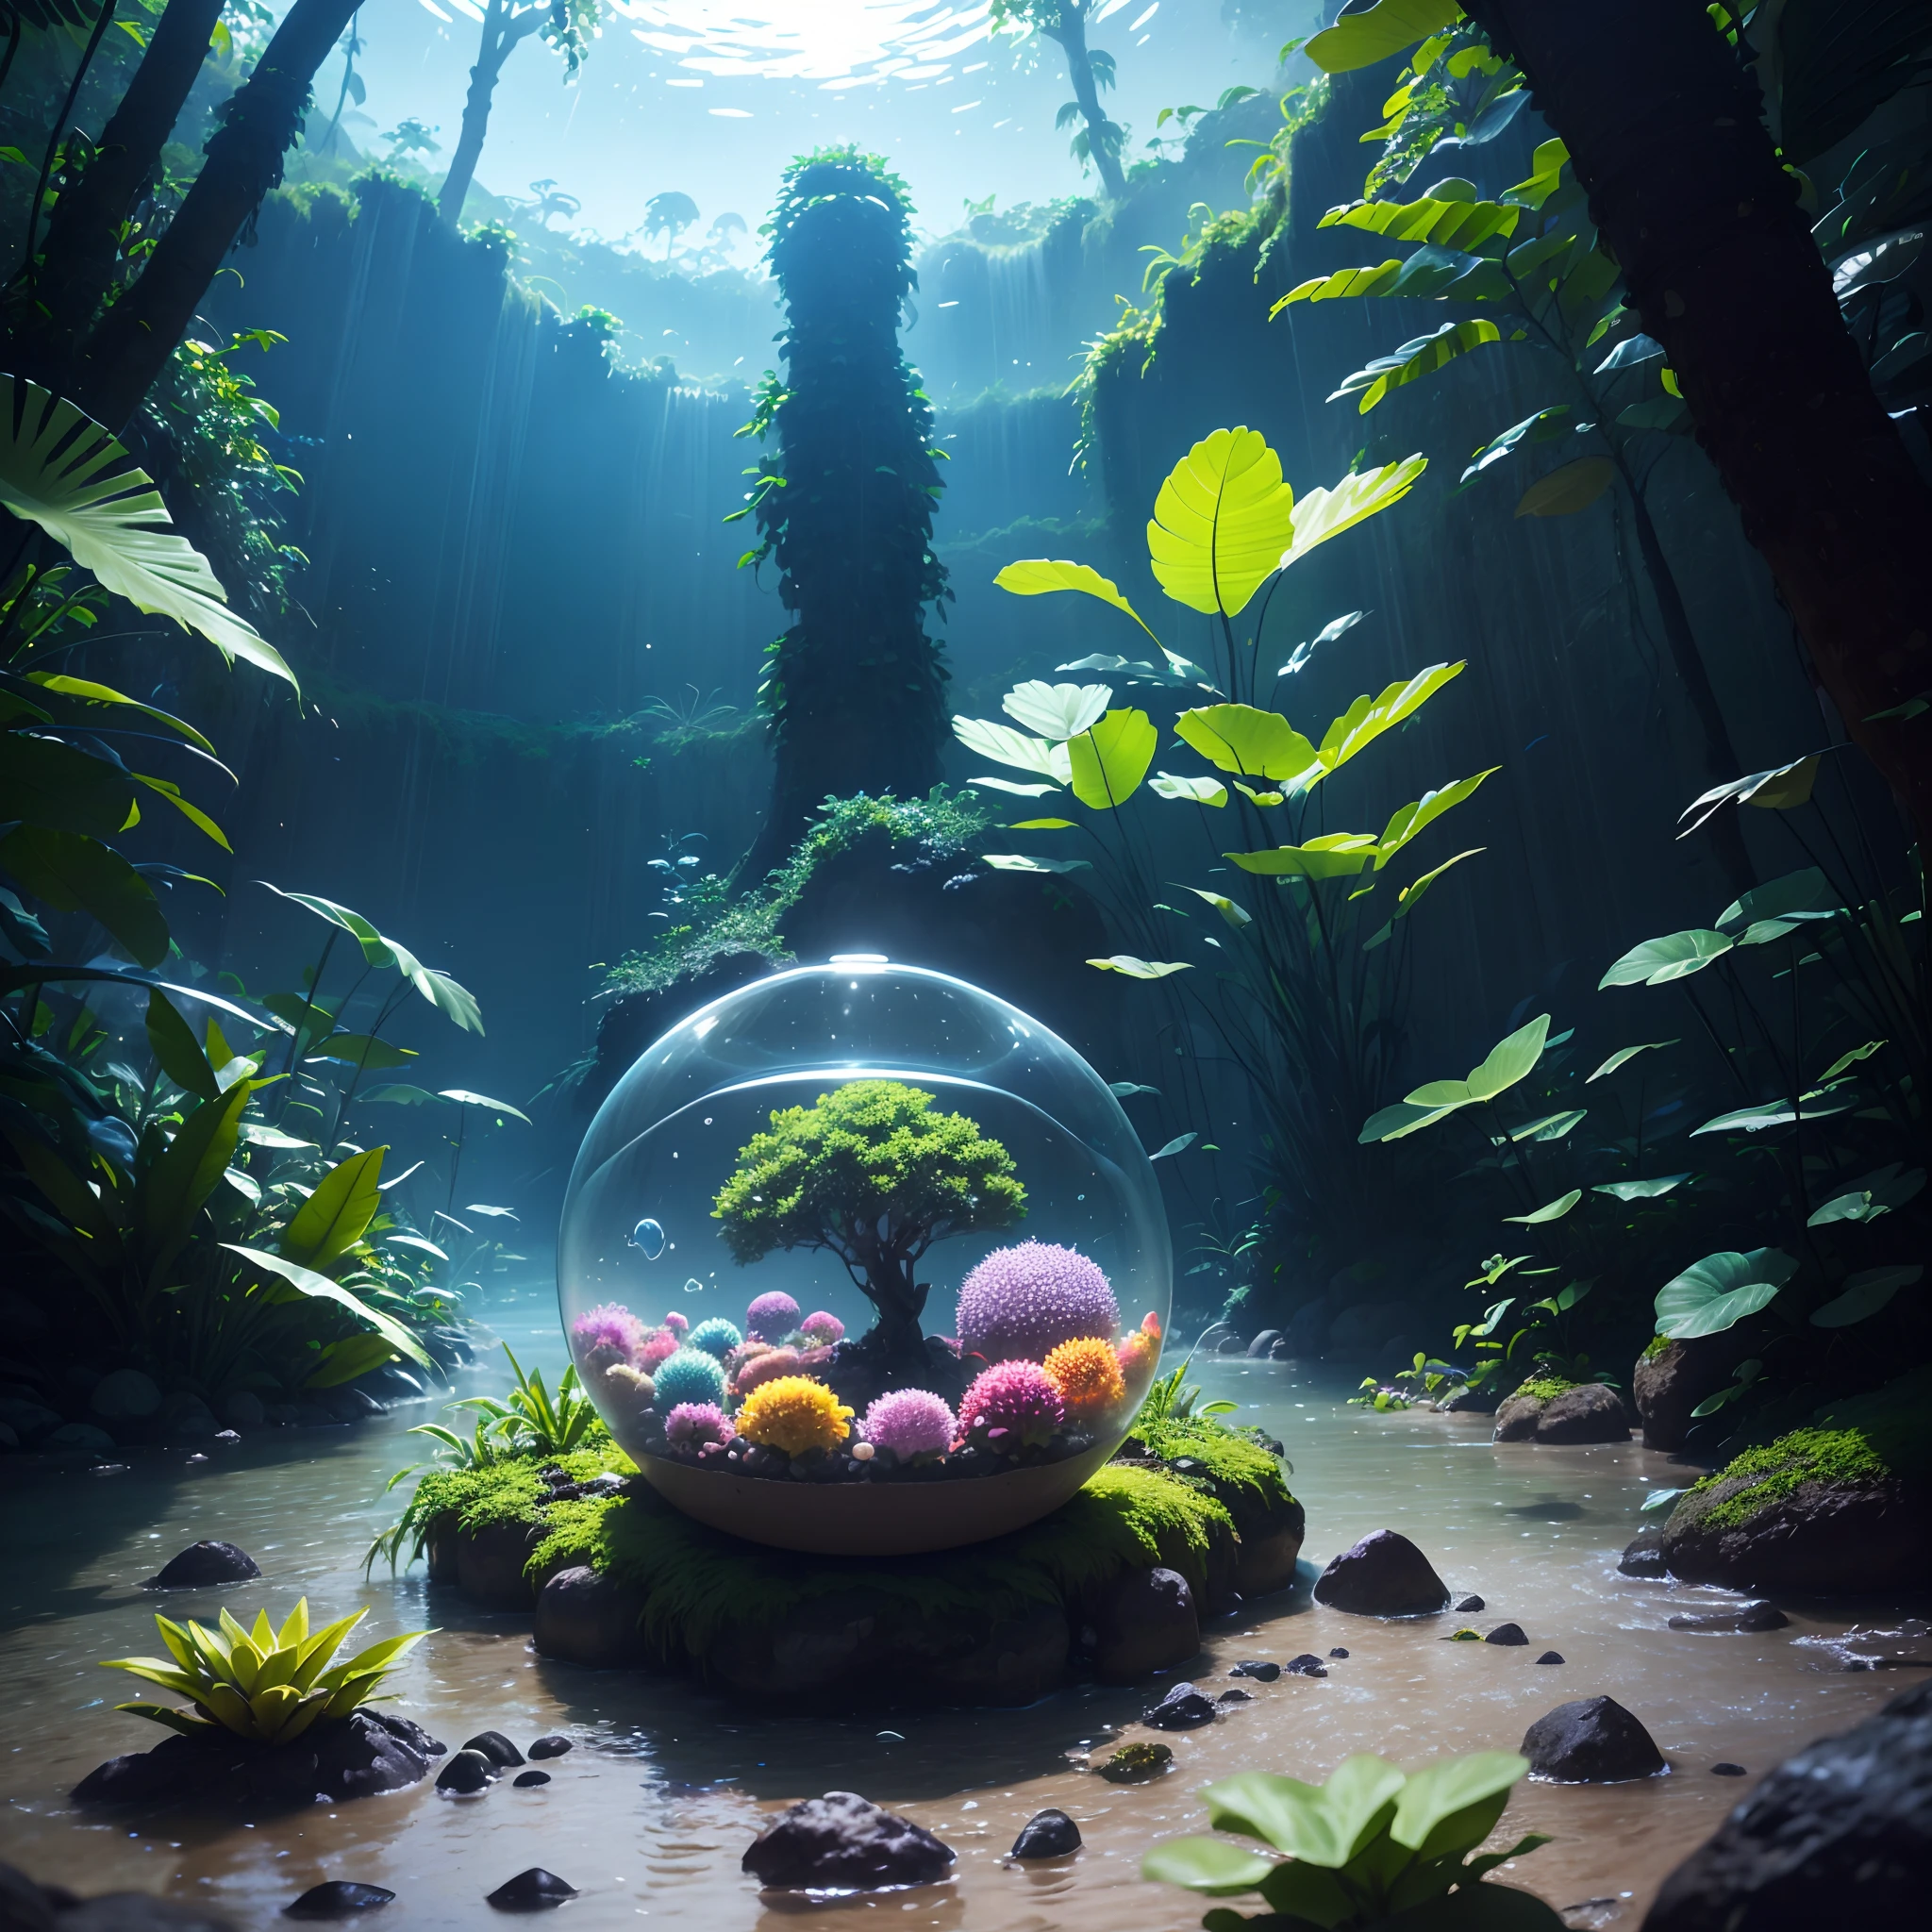 展示亚马逊生物多样性的圆形玻璃容器, 明亮的, 可爱的霓虹蘑菇, 导演是: 亚历山大·席尔瓦, 以逼真的幻想风格, 动漫 - 受启发的角色设计, 超高清图像, 柔和发光, 半透明的水, 邦巴科